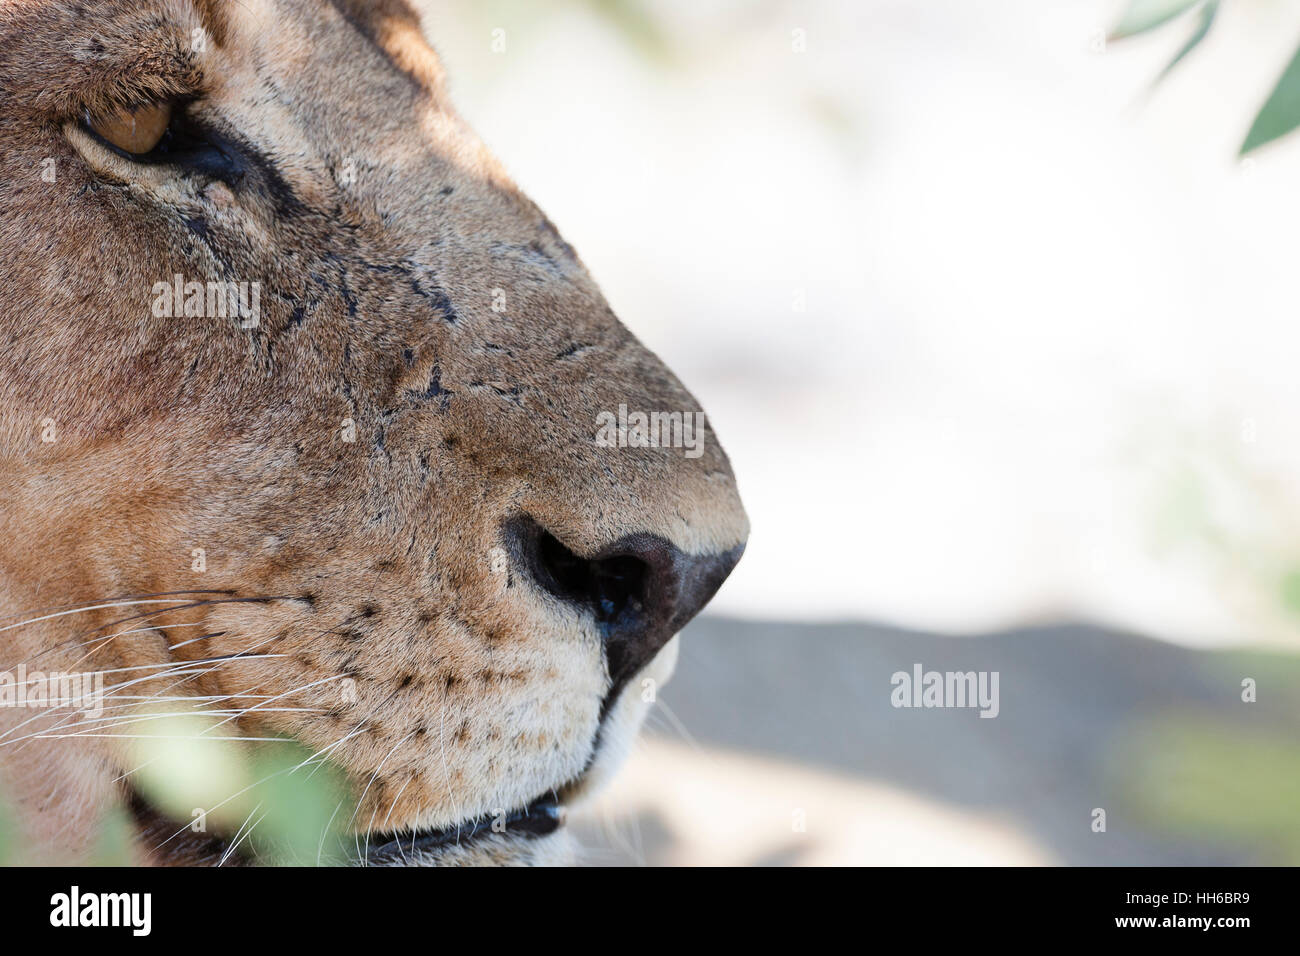 Etosha National Park, Namibia. Female lion in profile. Stock Photo